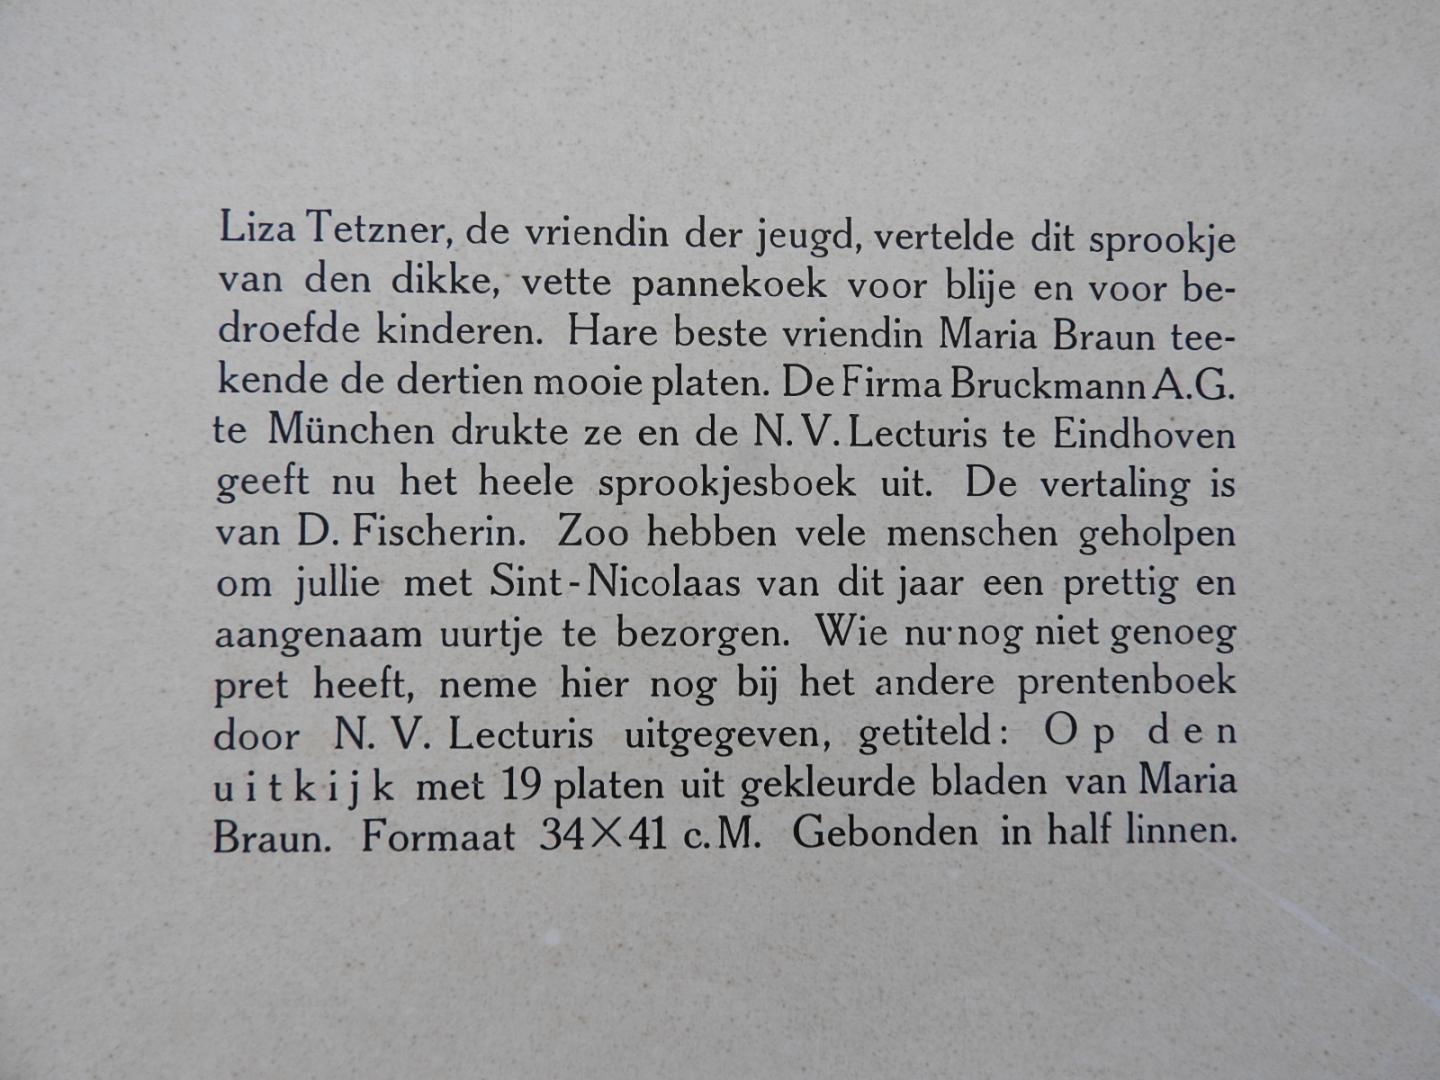 Tetzner, Liza / Braun, Maria (ill.) - 't Sprookje van de dikke vette pannekoek